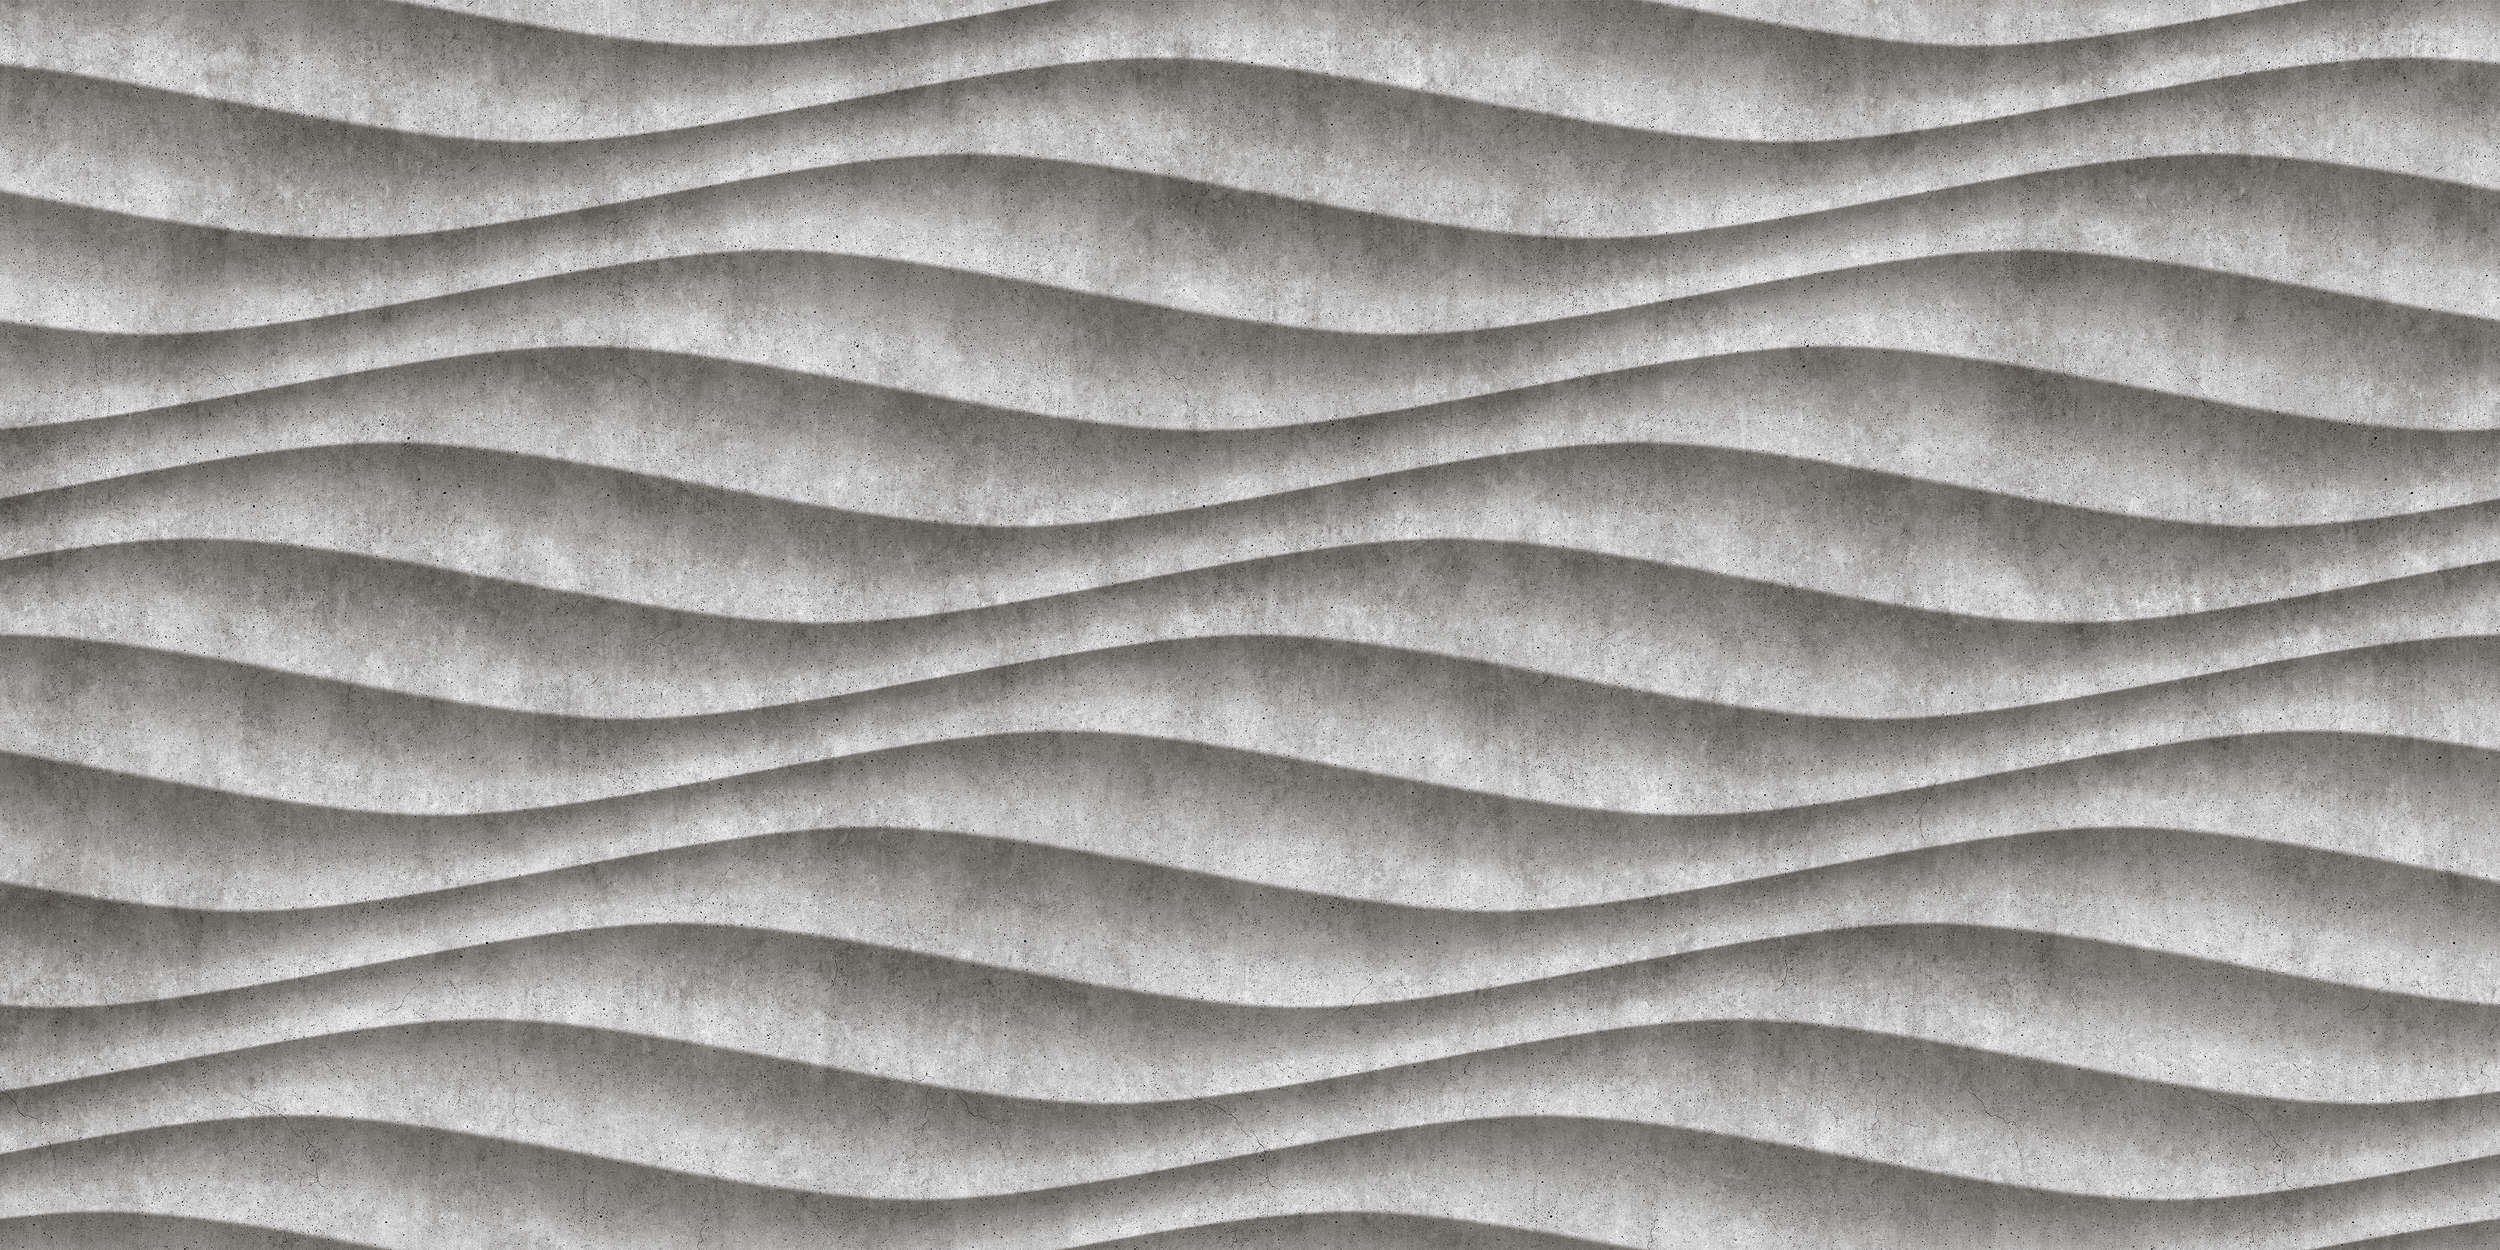             Canyon 2 - Papier peint 3D cool en béton ondulé - gris, noir | Intissé lisse mat
        